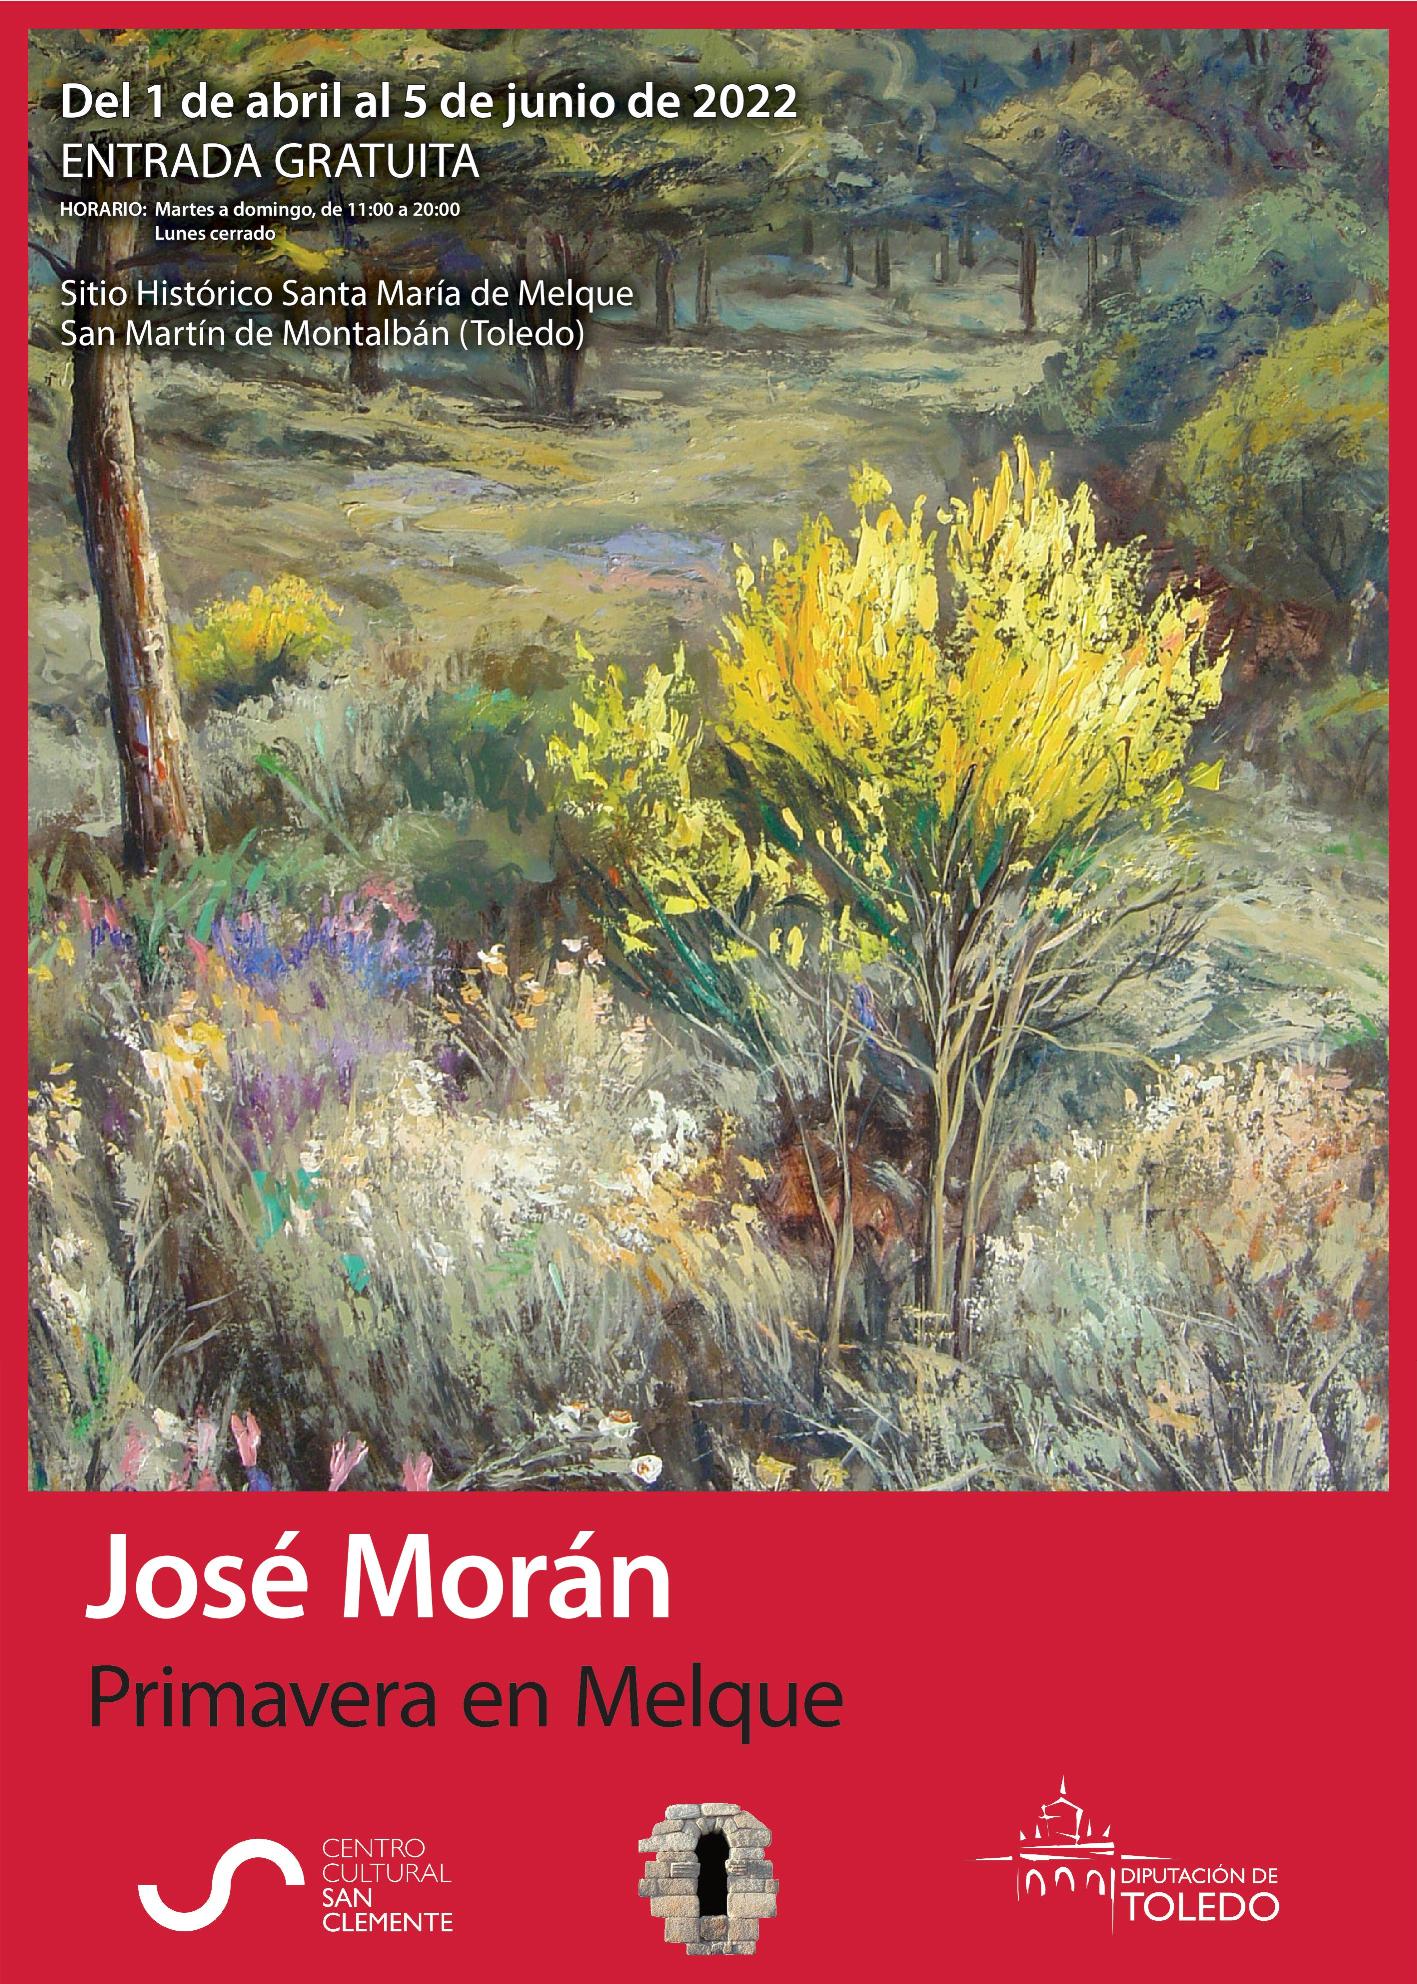 2. José Morán